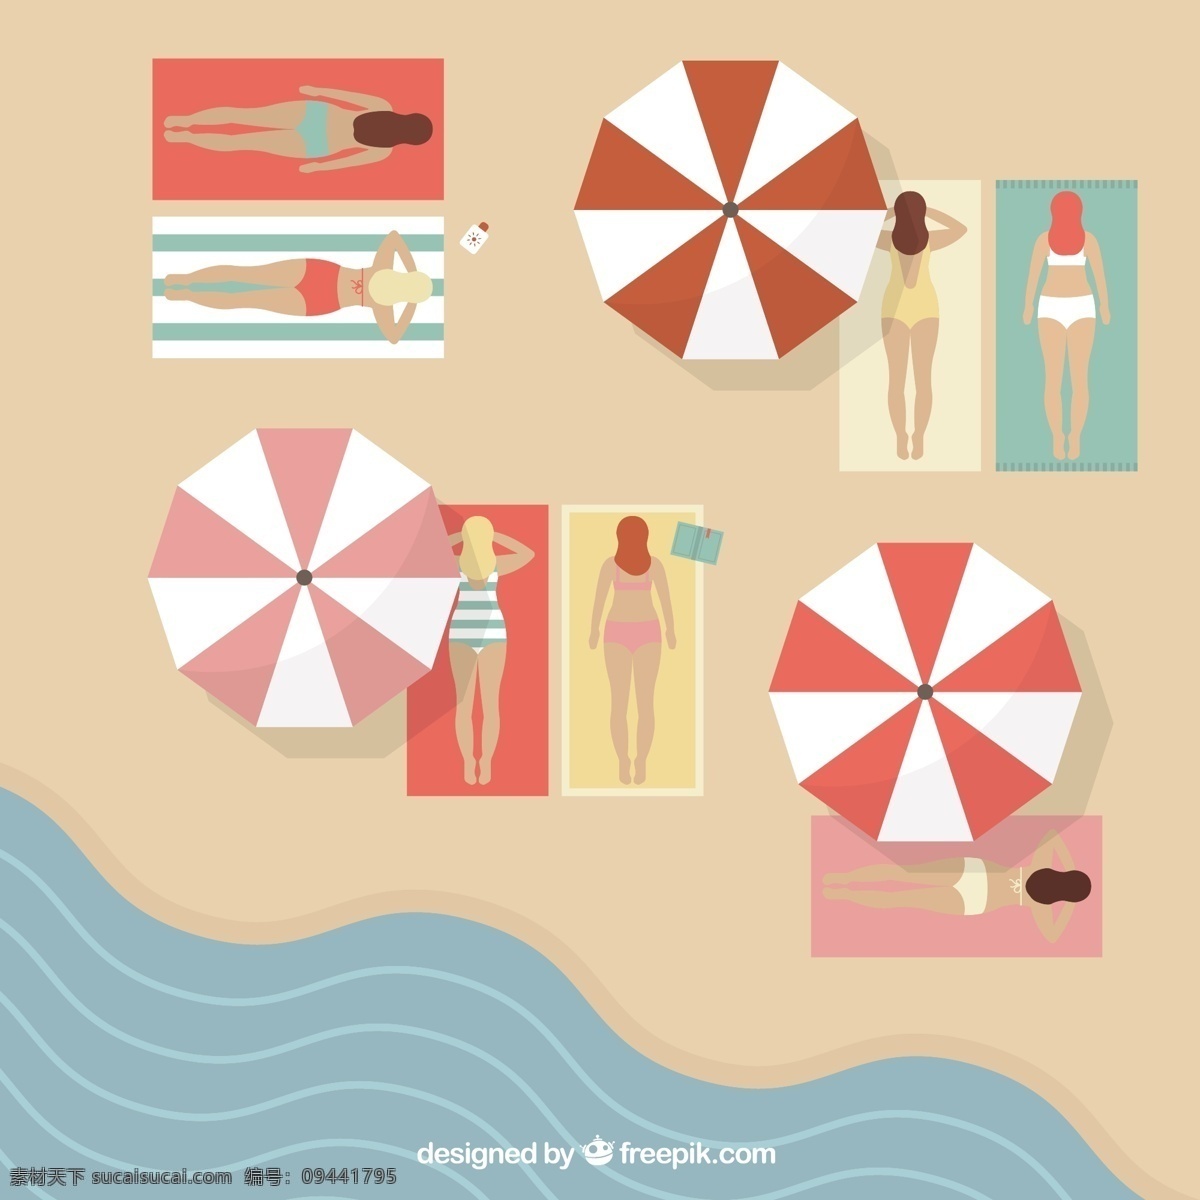 沙滩 日光 浴场 俯视图 女子 大海 夏季 遮阳伞 日光浴 沙滩毯子 矢量图 ai格式 黄色